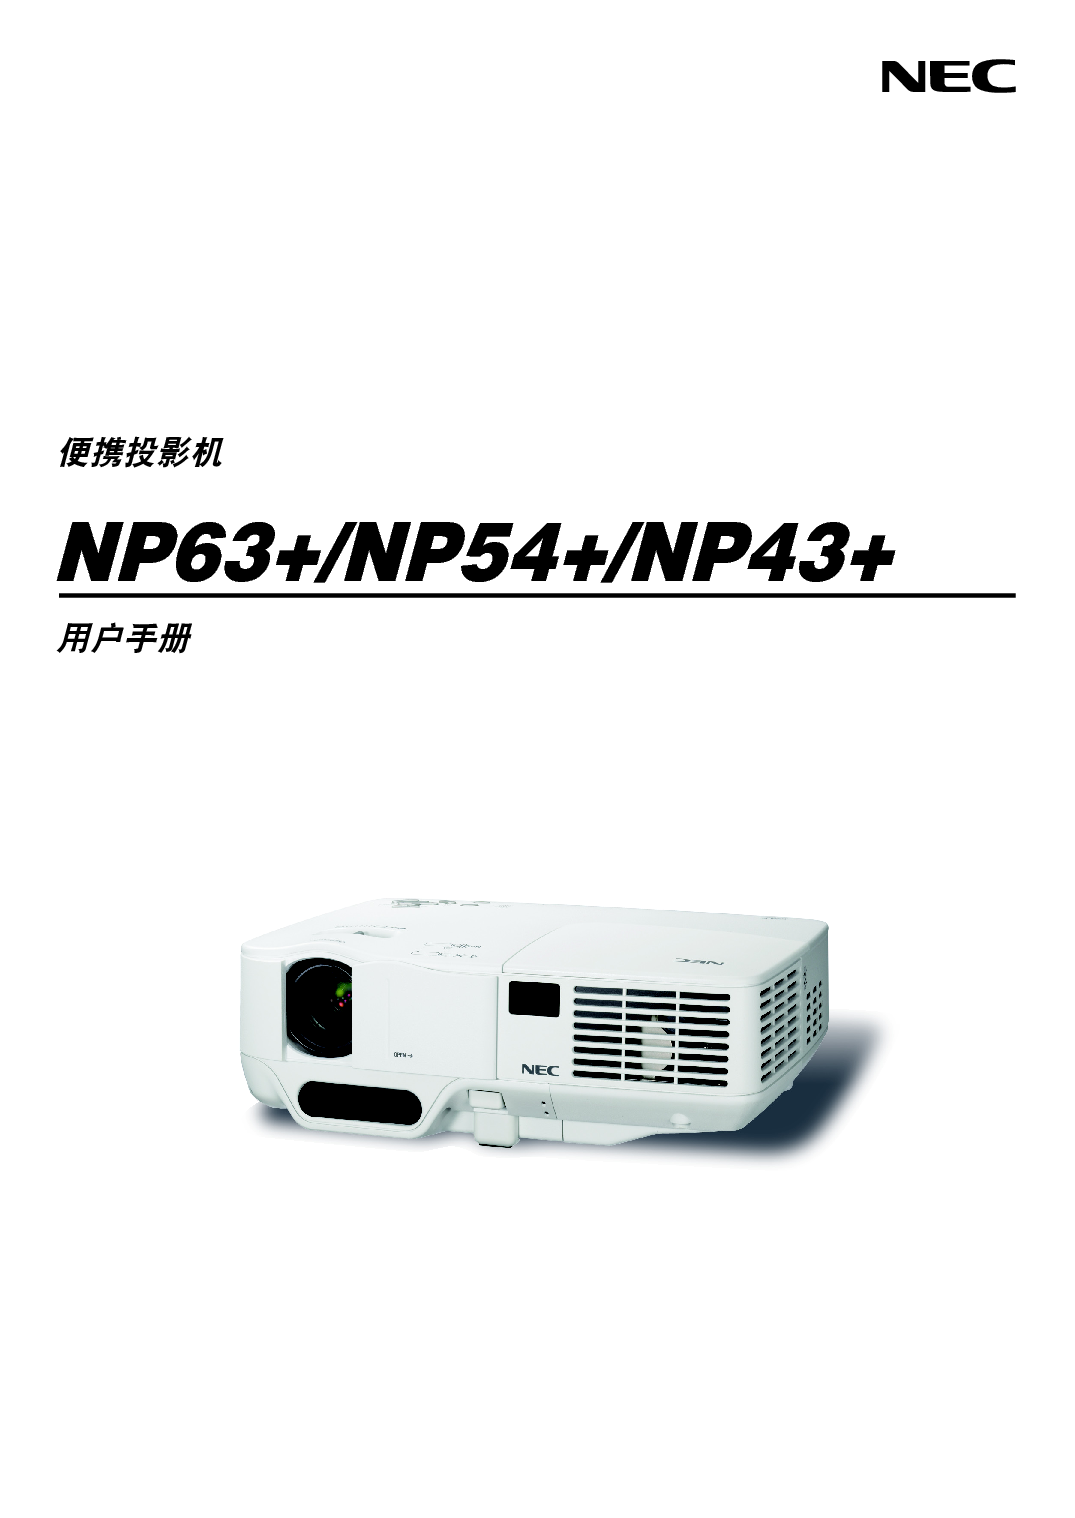 NEC NP43+ 用户手册 封面